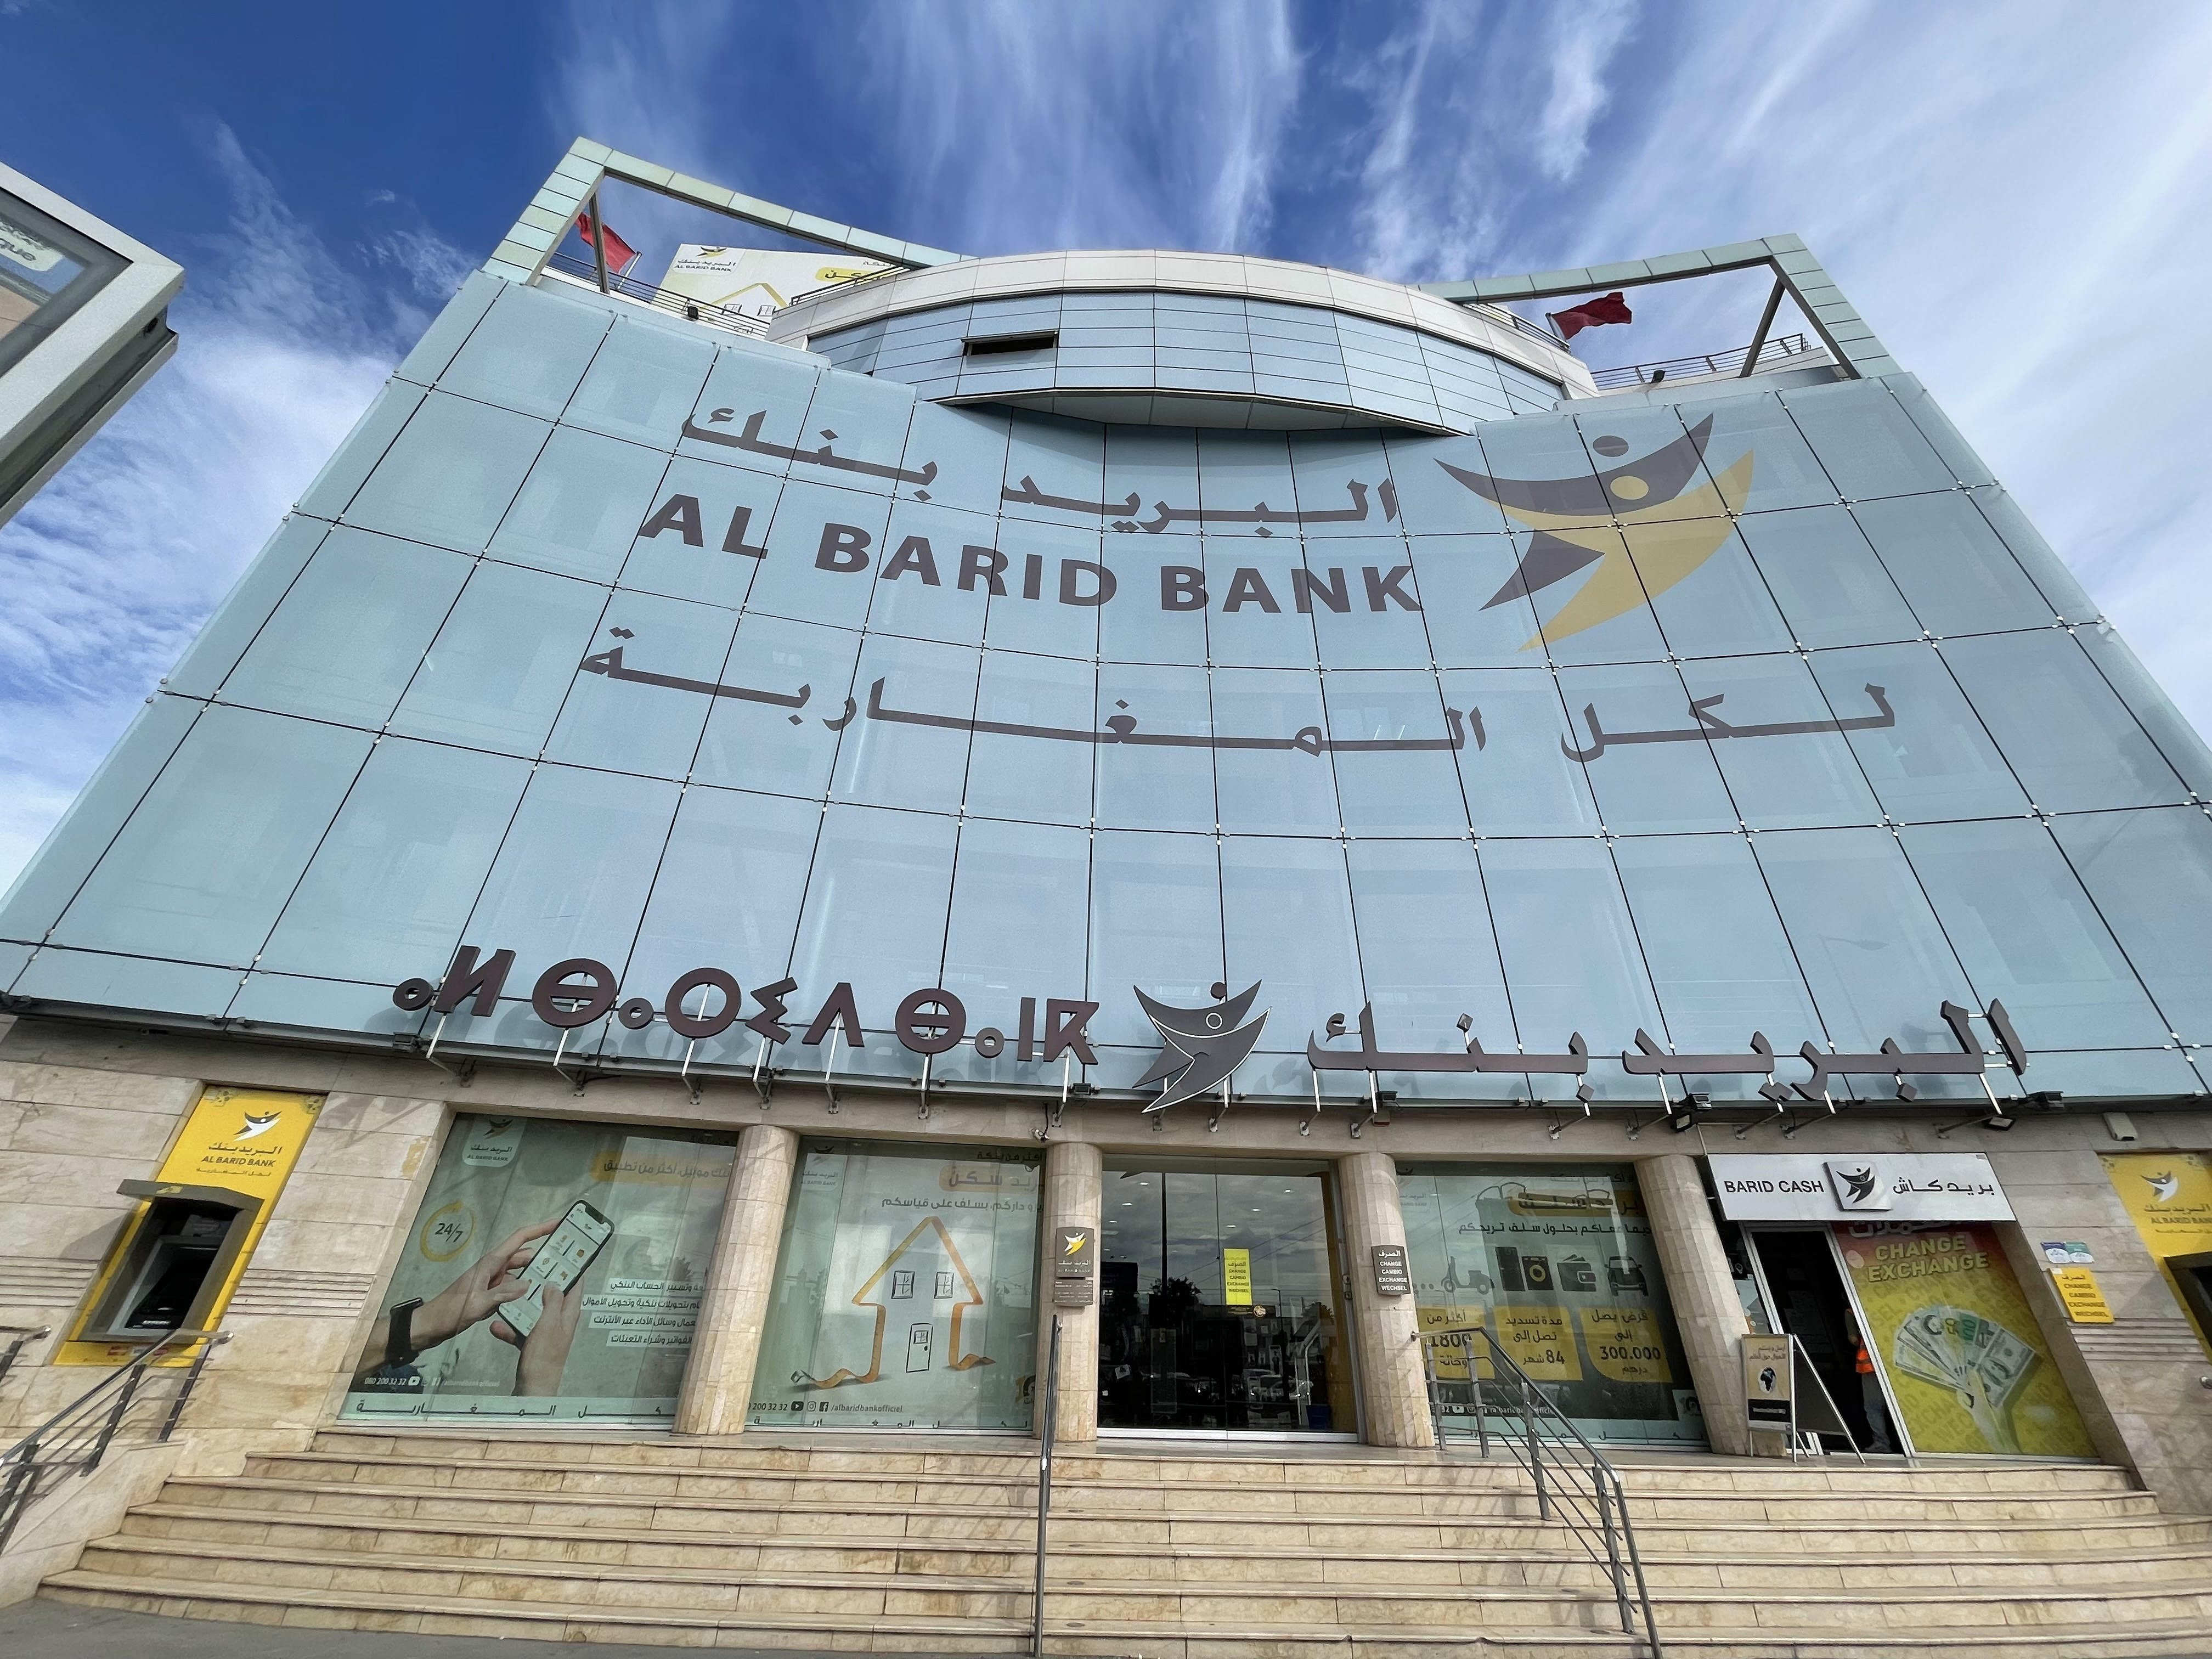 Al Barid Bank : De nouvelles nominations au sein du Conseil de surveillance